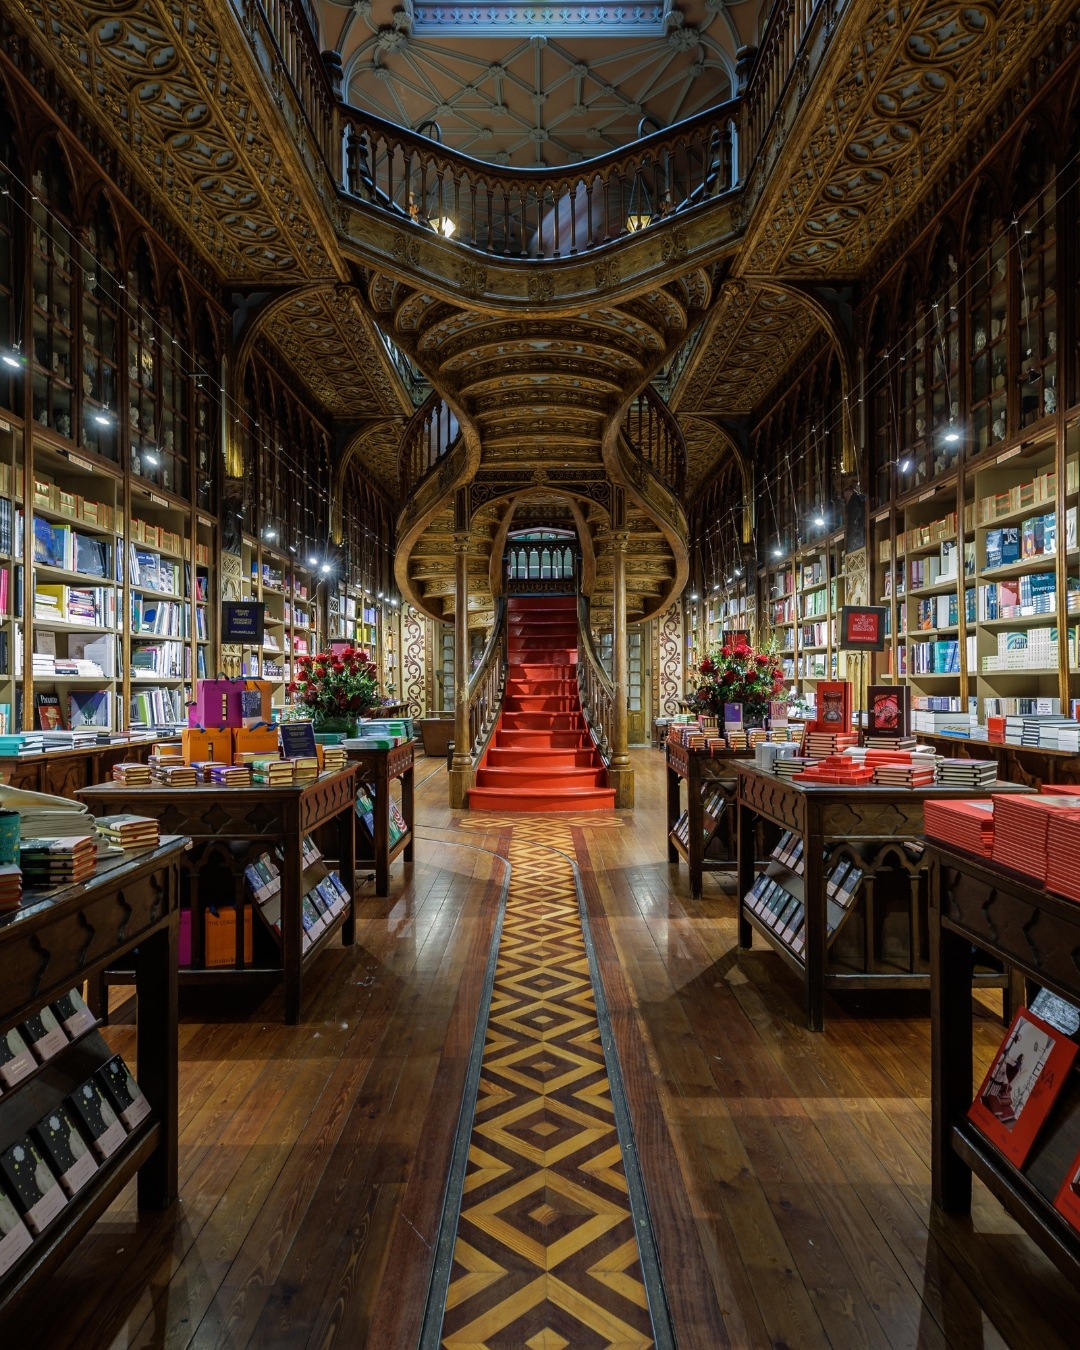 Jedinstvena knjižara za koju se smatra da je poslužila kao inspiracija za knjige o Harryju Potteru